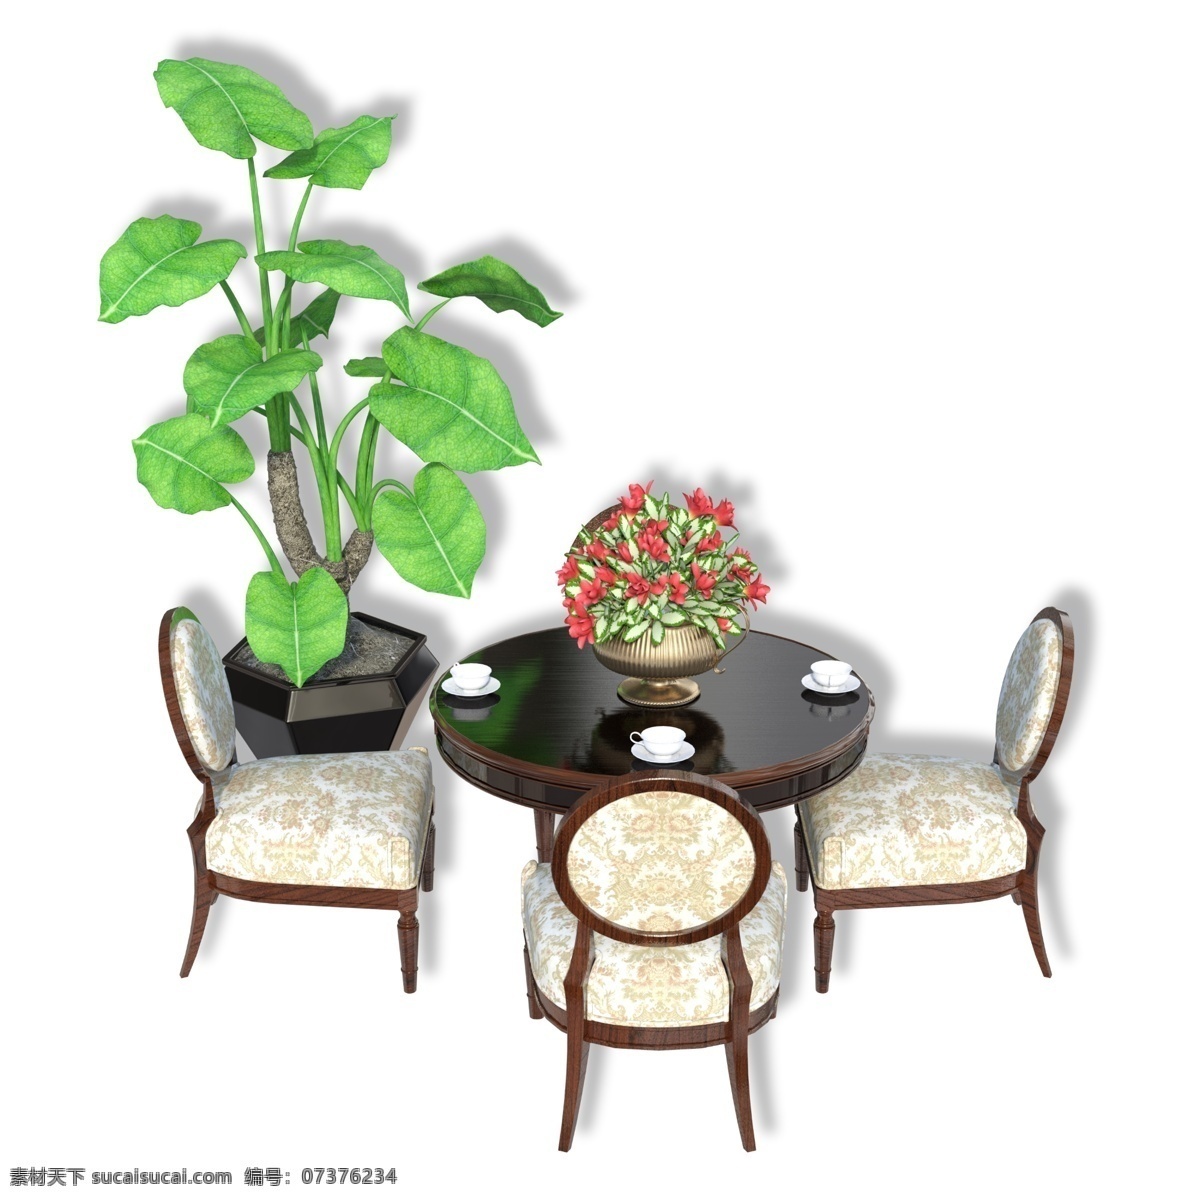 圆桌 三 椅子 桌子 圆形桌子 绿植 家具